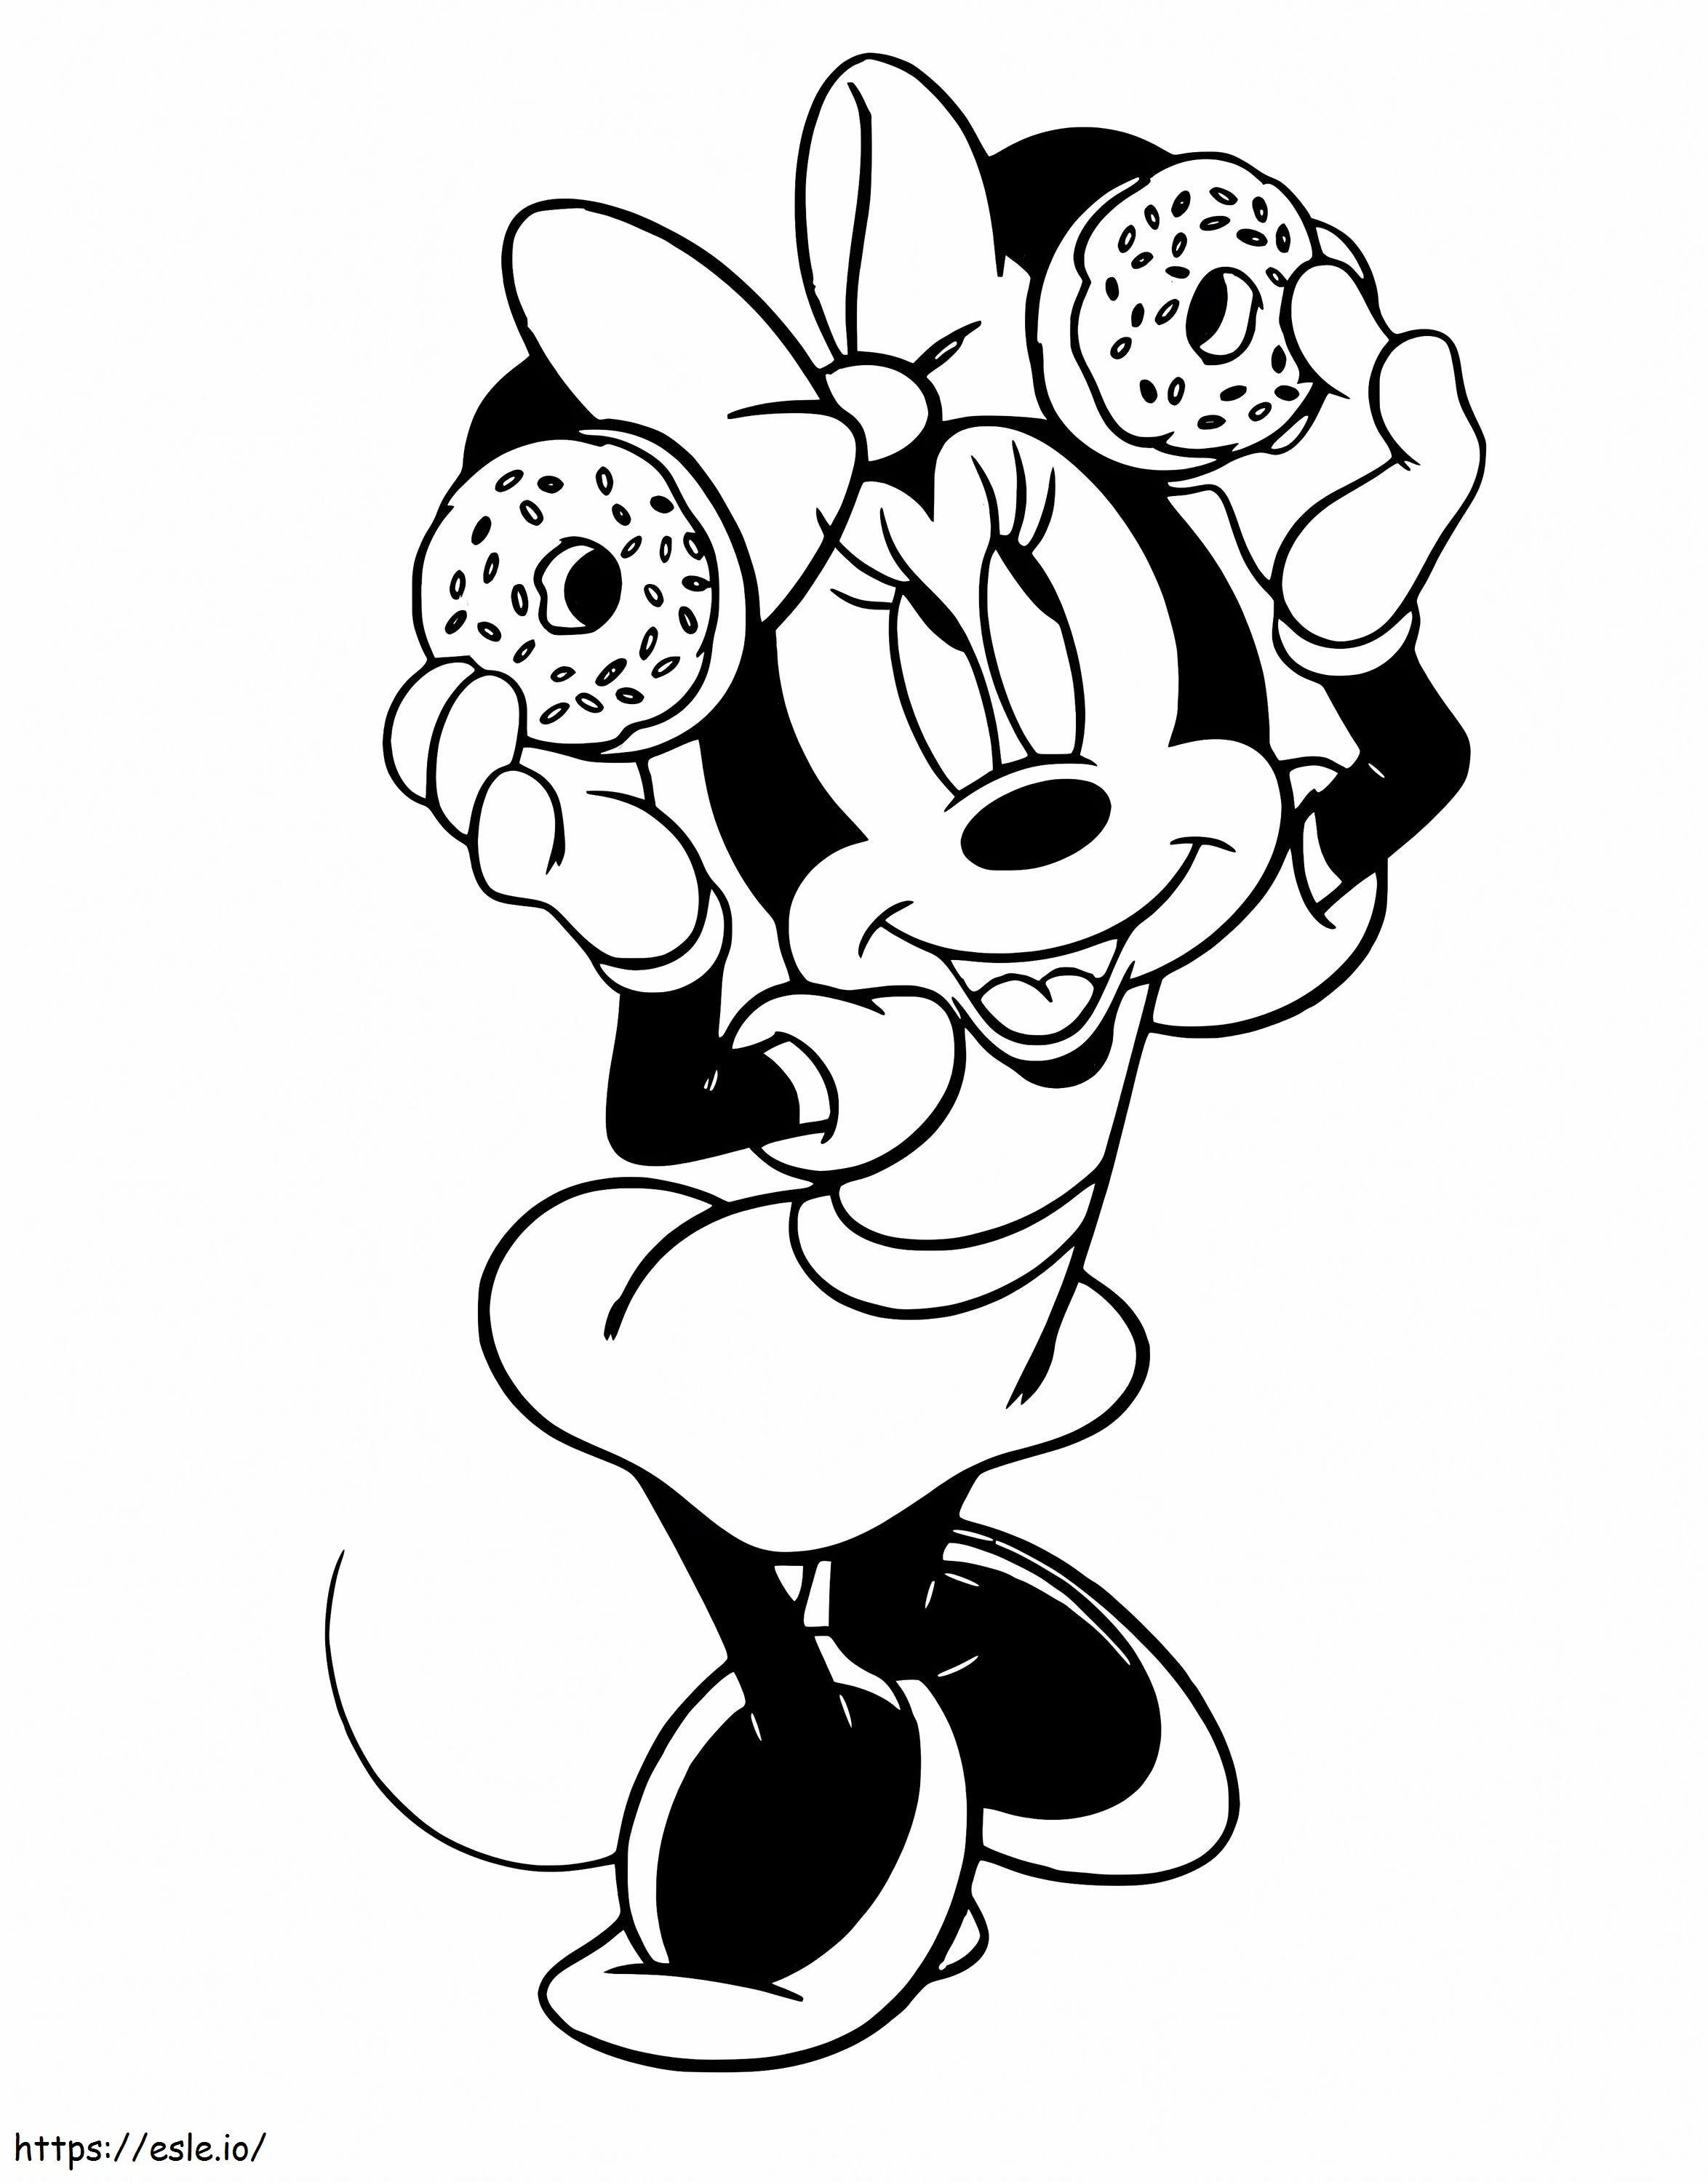 Minnie Mouse sosteniendo dos donas para colorear